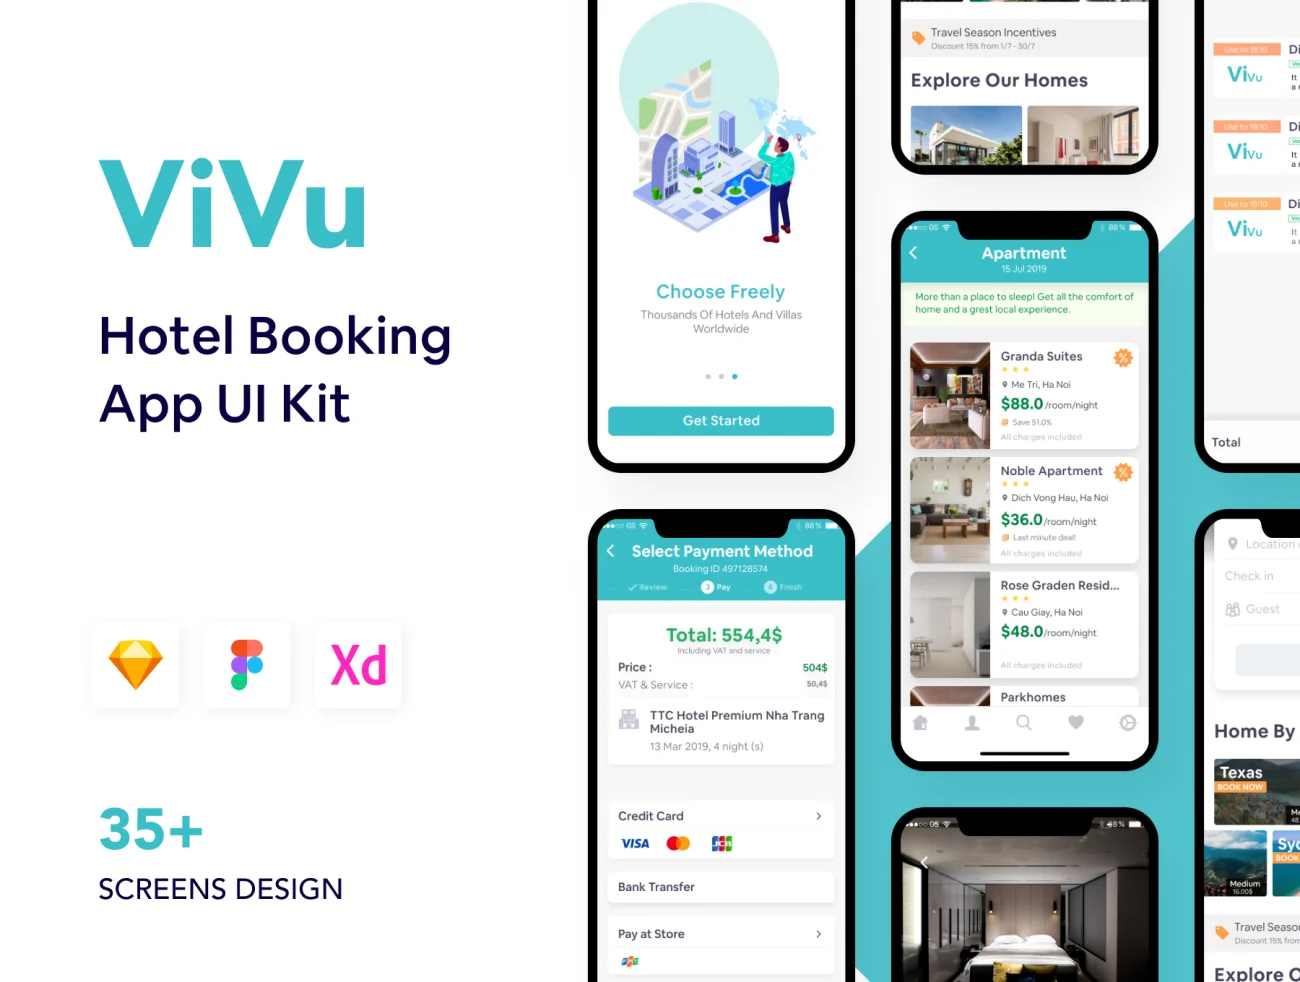 ViVu Hotel Booking App UI Kit 酒店预订app应用UI套件-UI/UX、ui套件、主页、介绍、付款、出行、列表、卡片式、地图、应用、引导页、支付、日历、注册、登录页、着陆页、网购、聊天、表单、详情、预订-到位啦UI